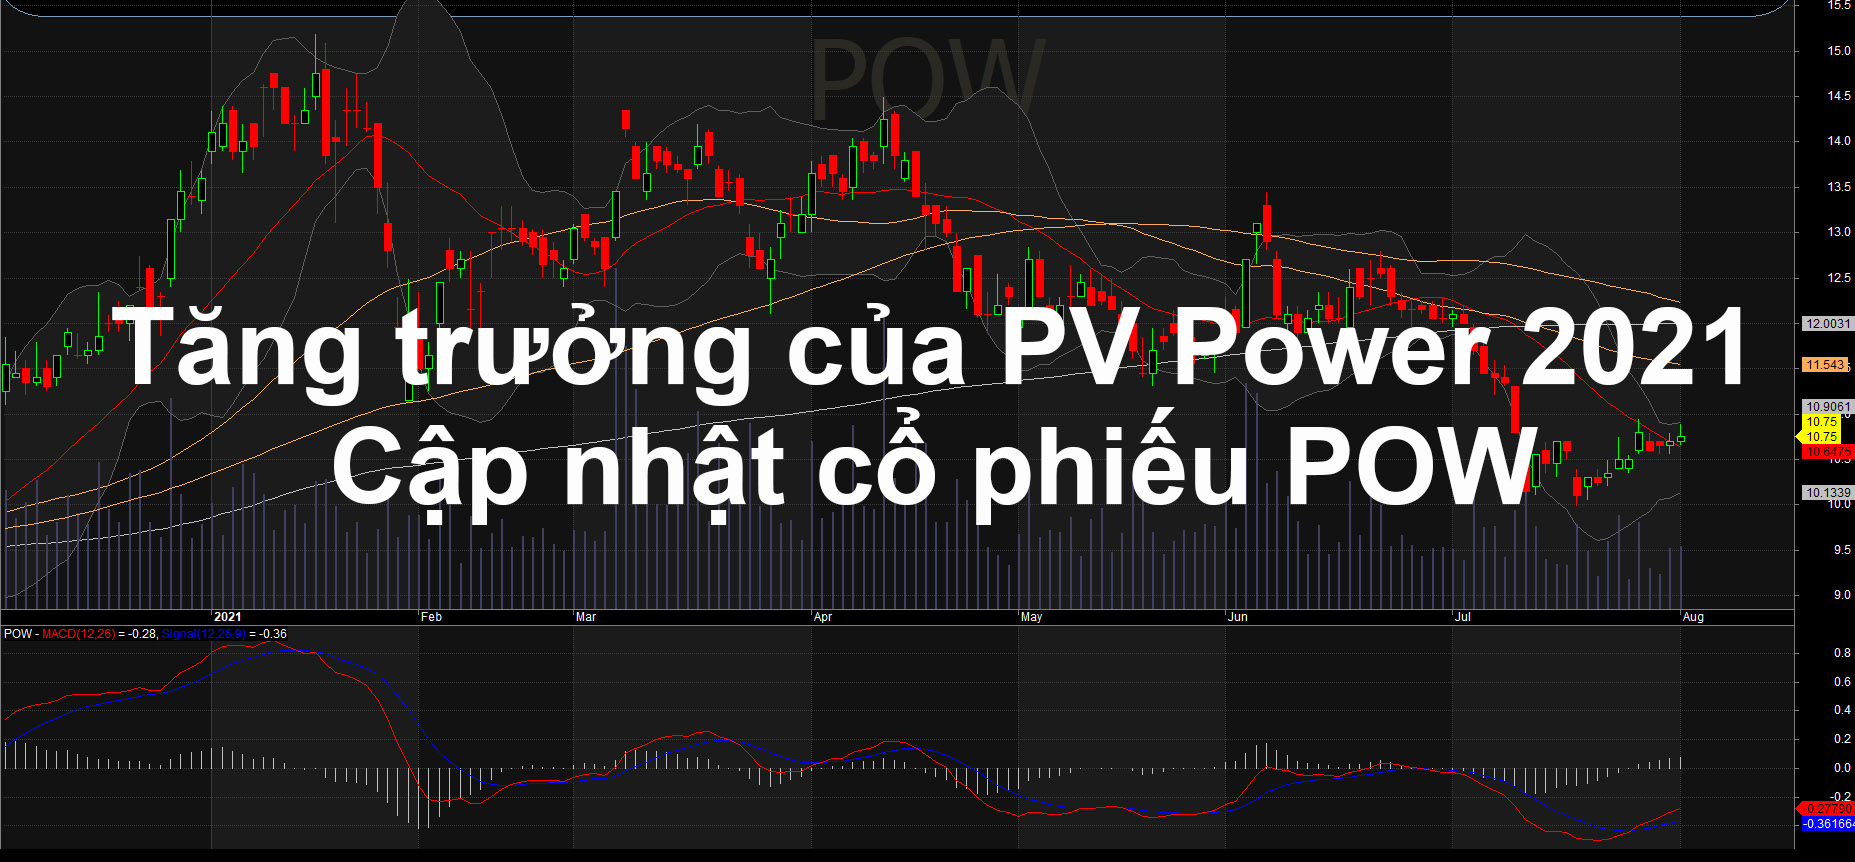 Phân tích sự biến động trong tăng trưởng của PV Power (cổ phiếu Pow)